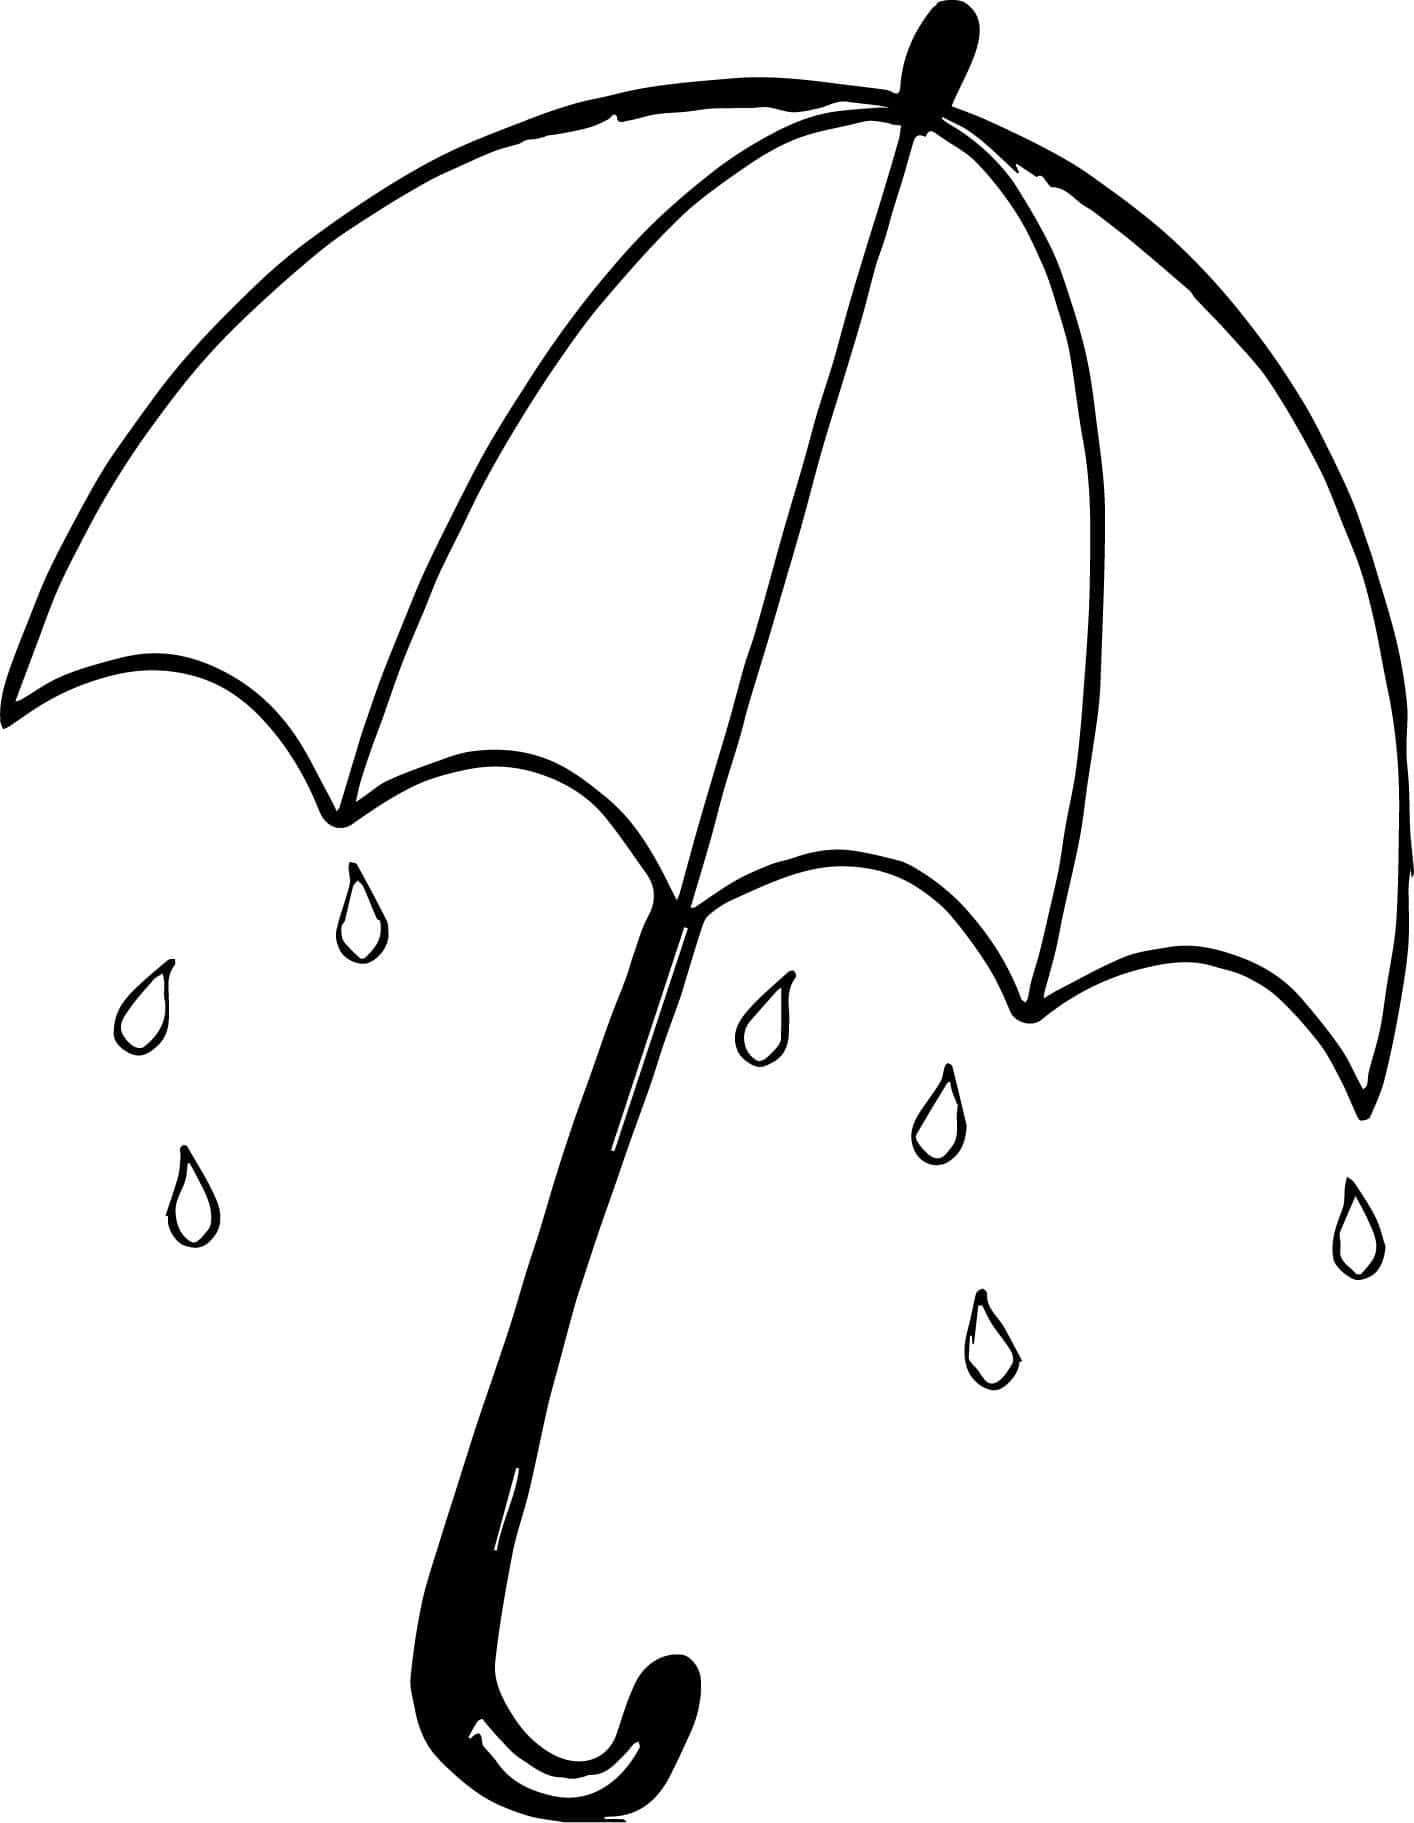 Skyddadig Från Regnet Och Håll Dig Snygg Med Ett Paraply.